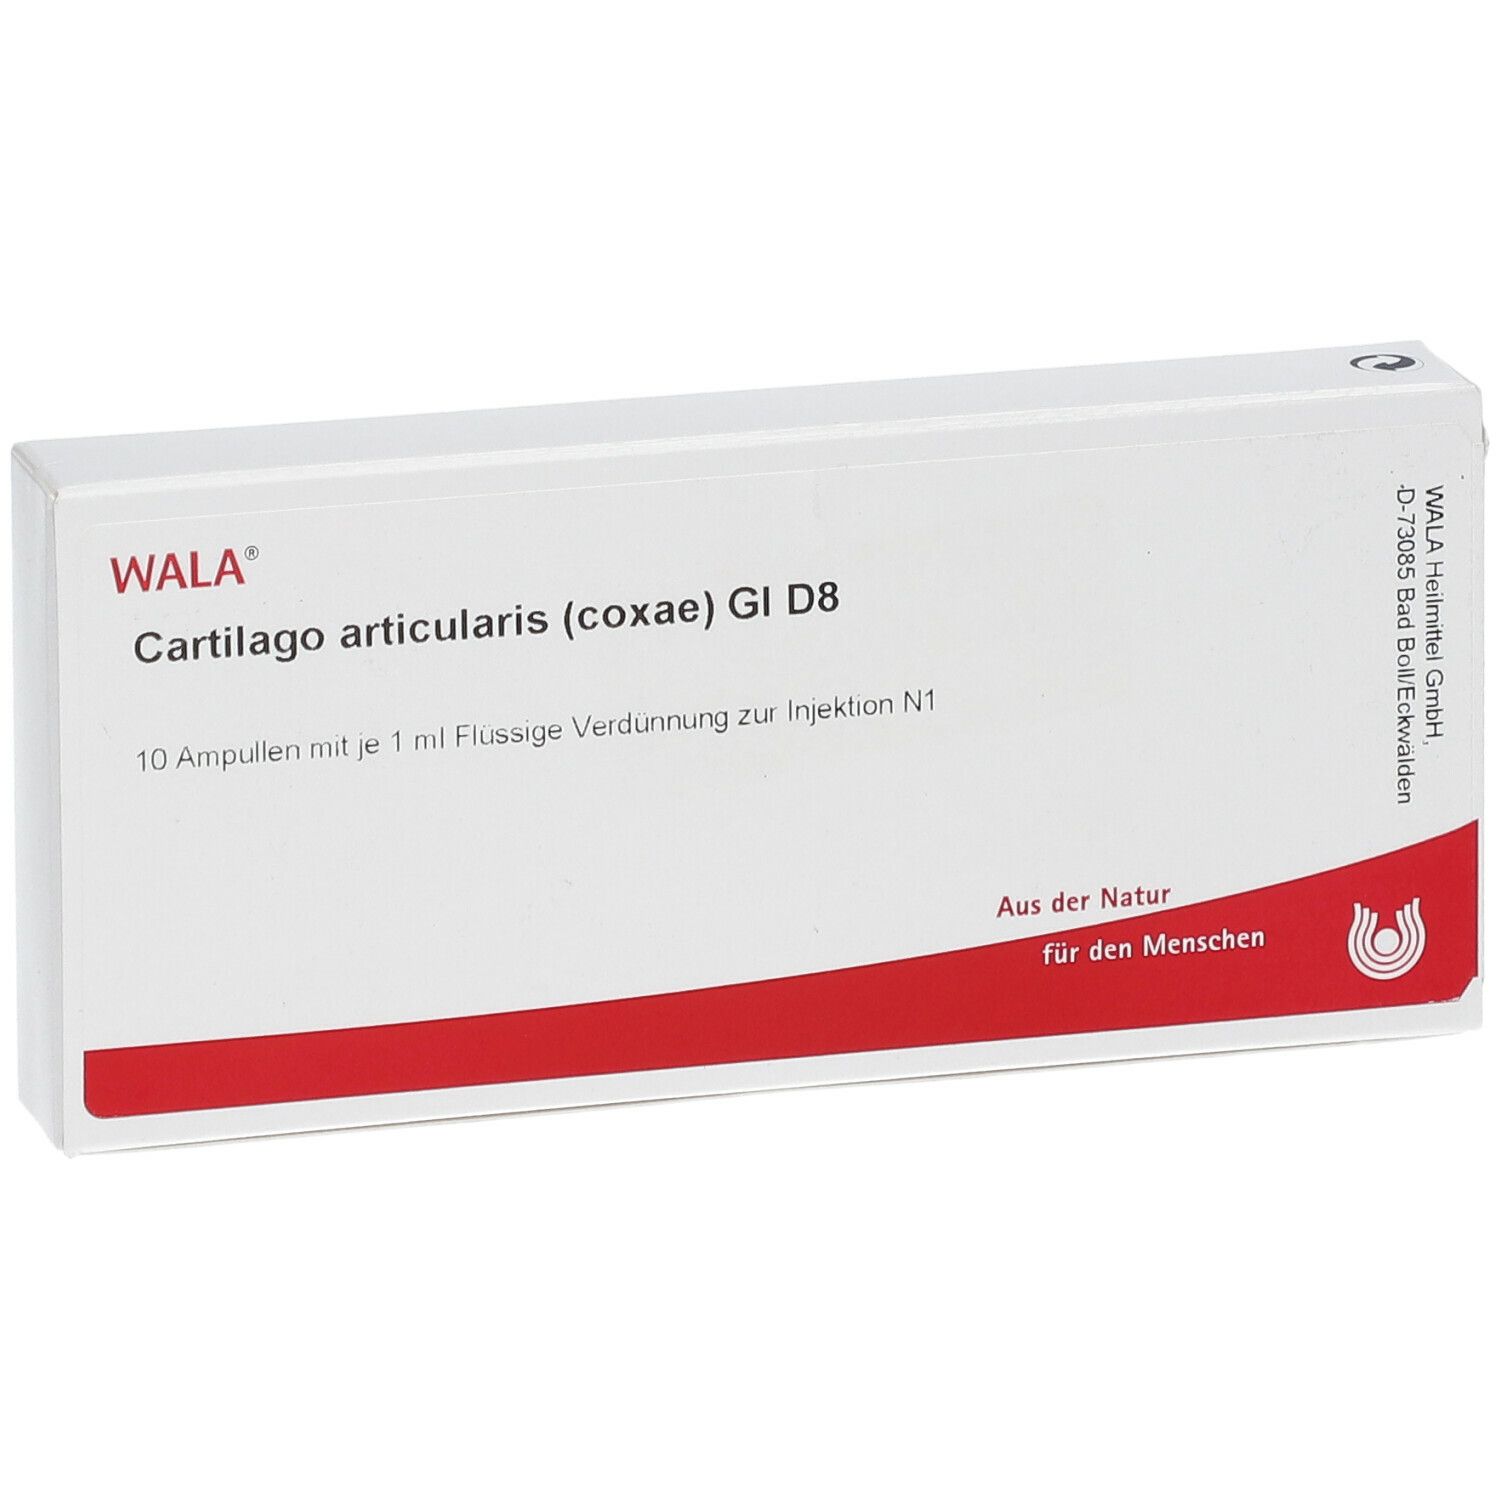 WALA® Cartilago articularis coxae Gl D 8